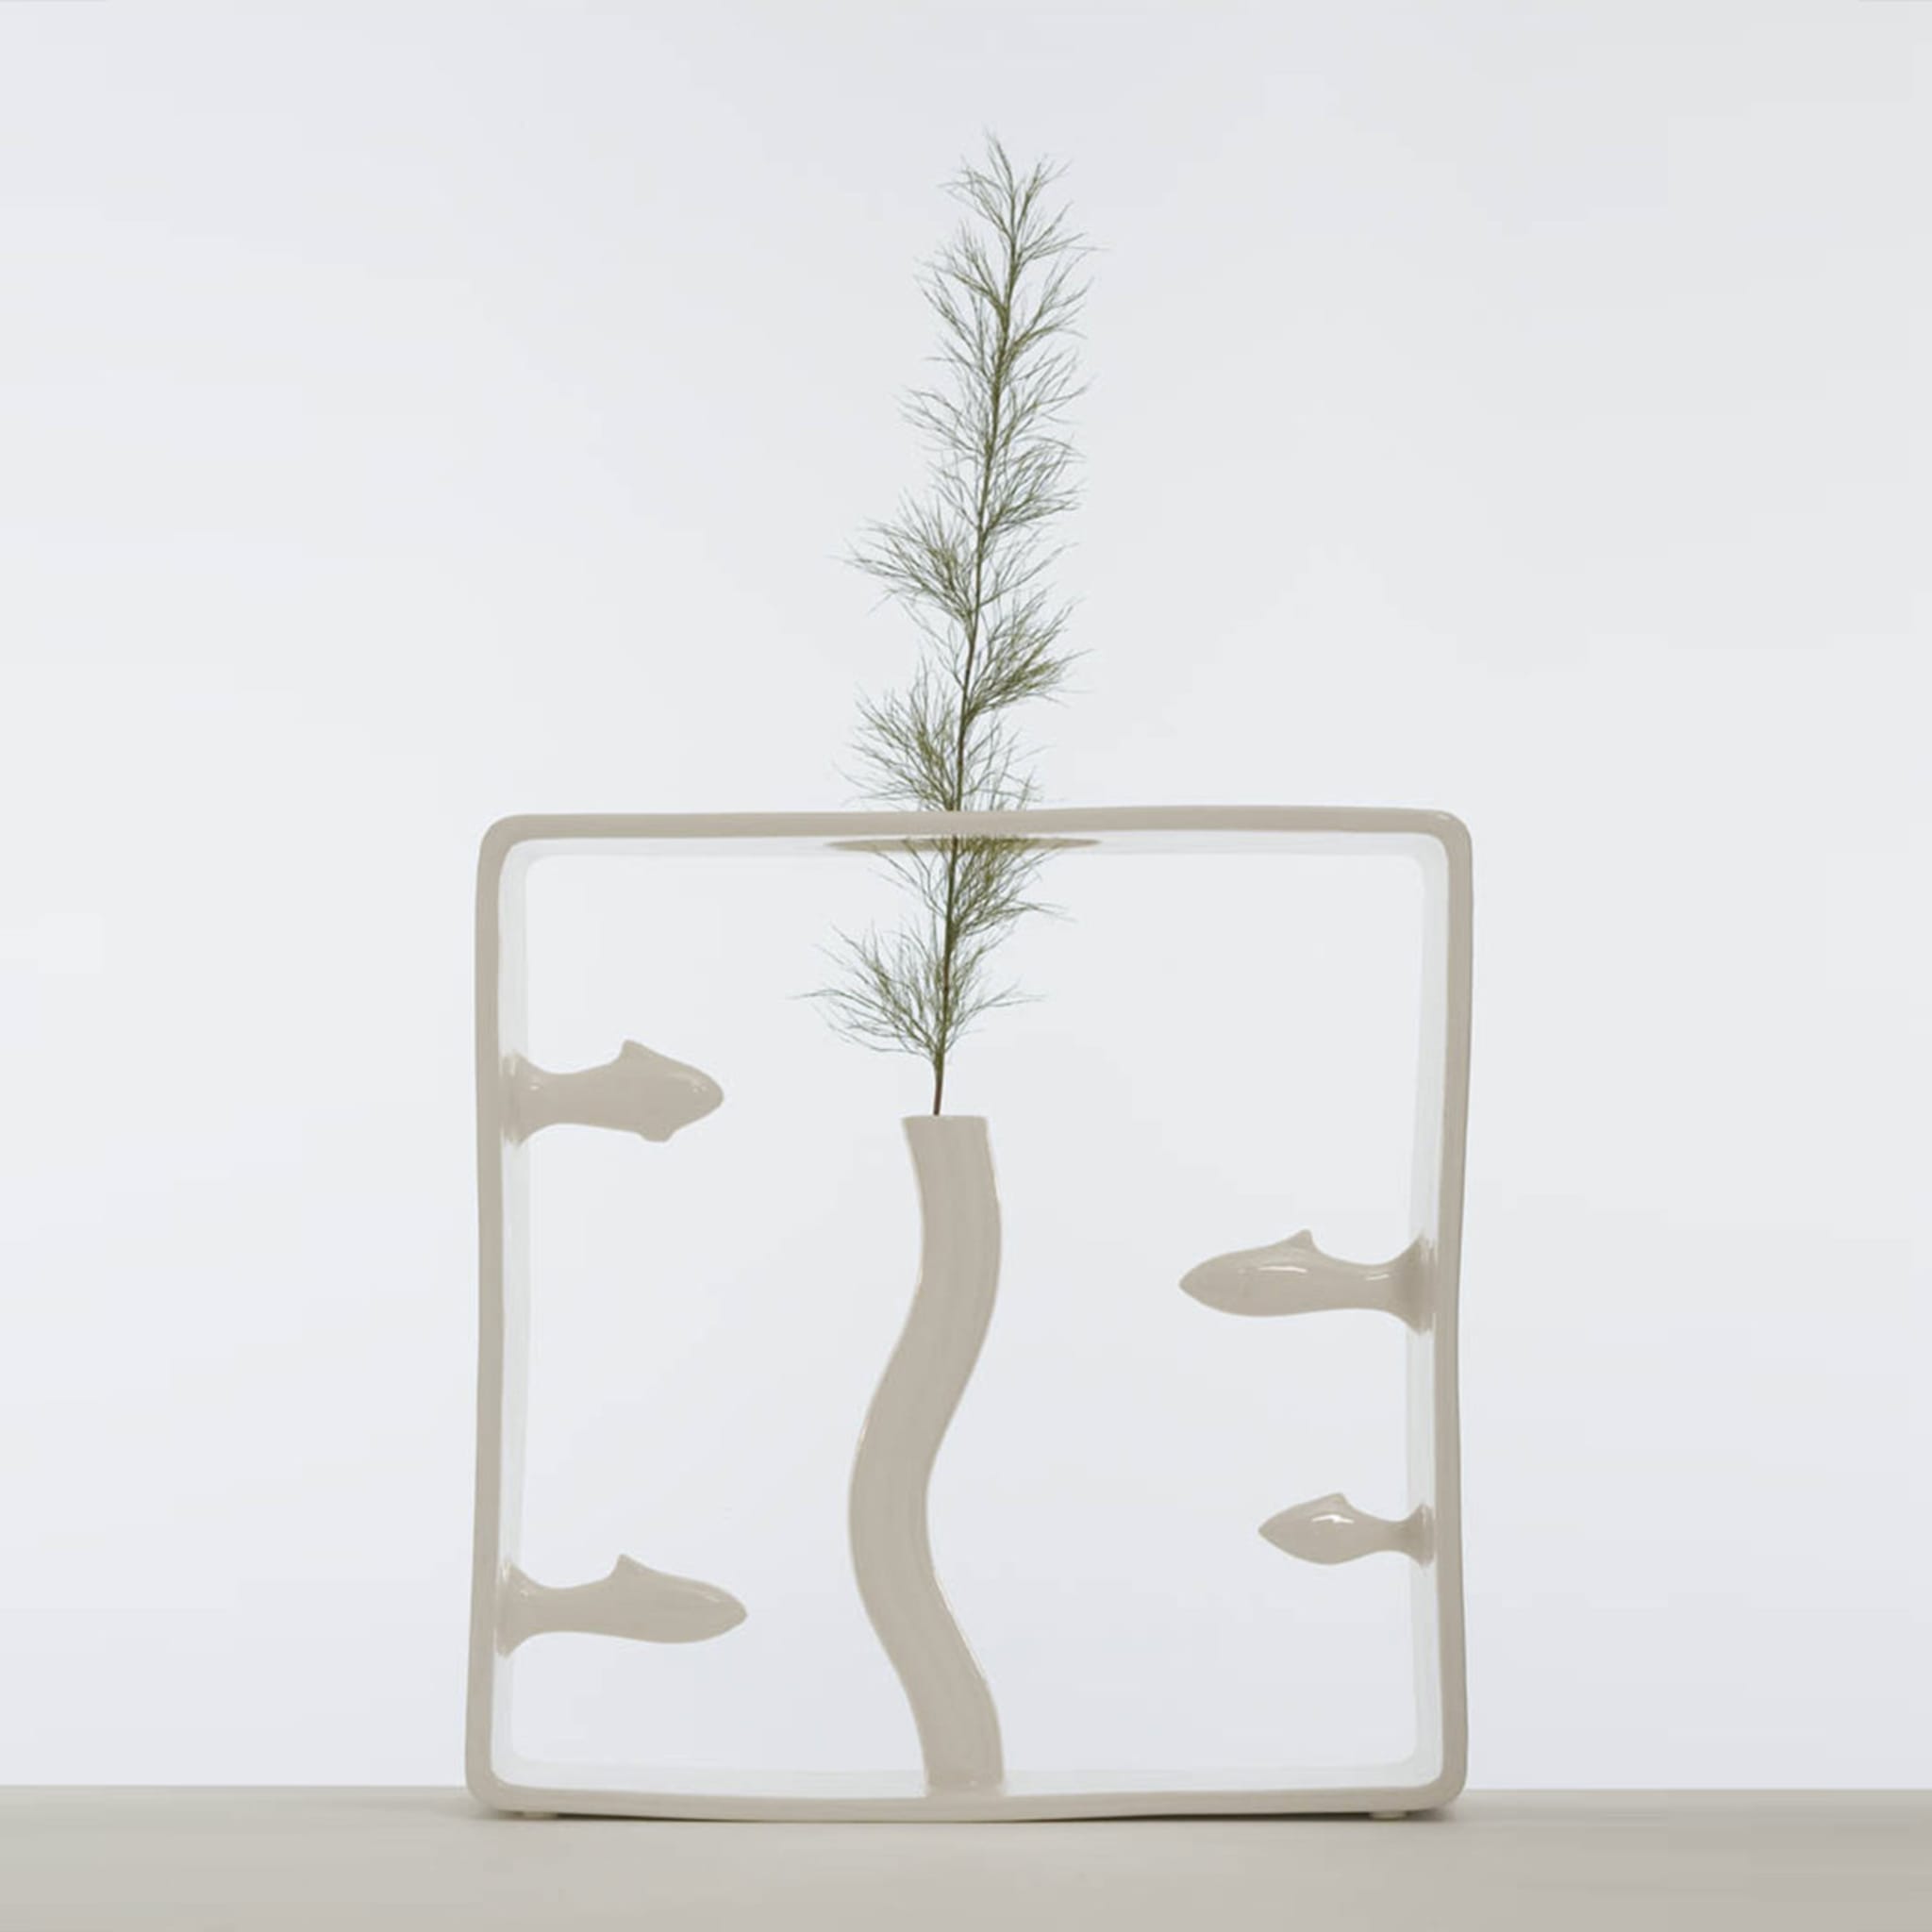 Portali 12 Vase by Andrea Branzi - Alternative view 1